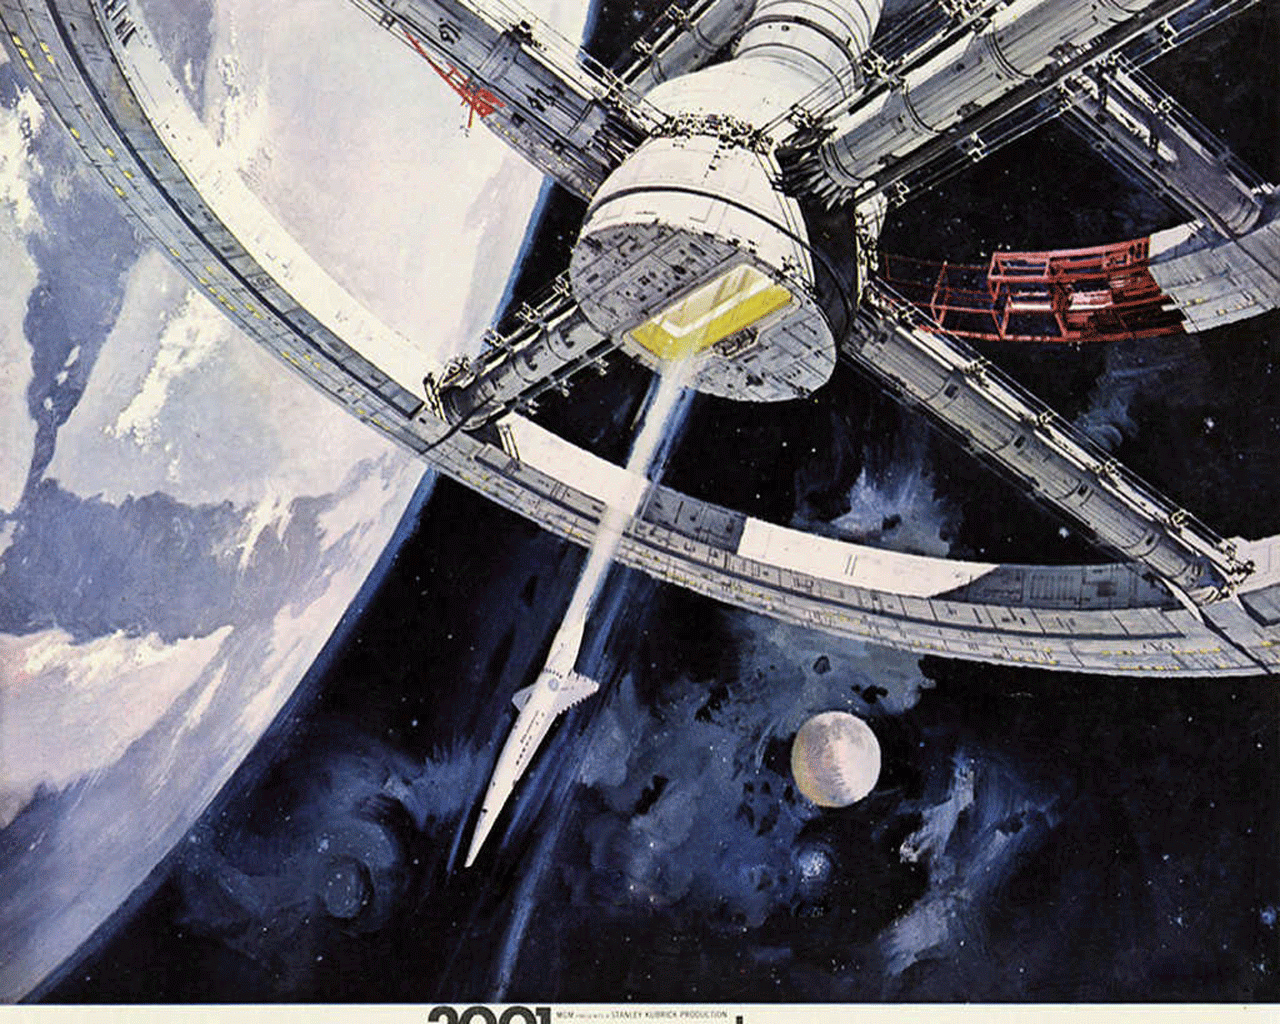 [76+] 2001 Space Odyssey Wallpaper | WallpaperSafari.com